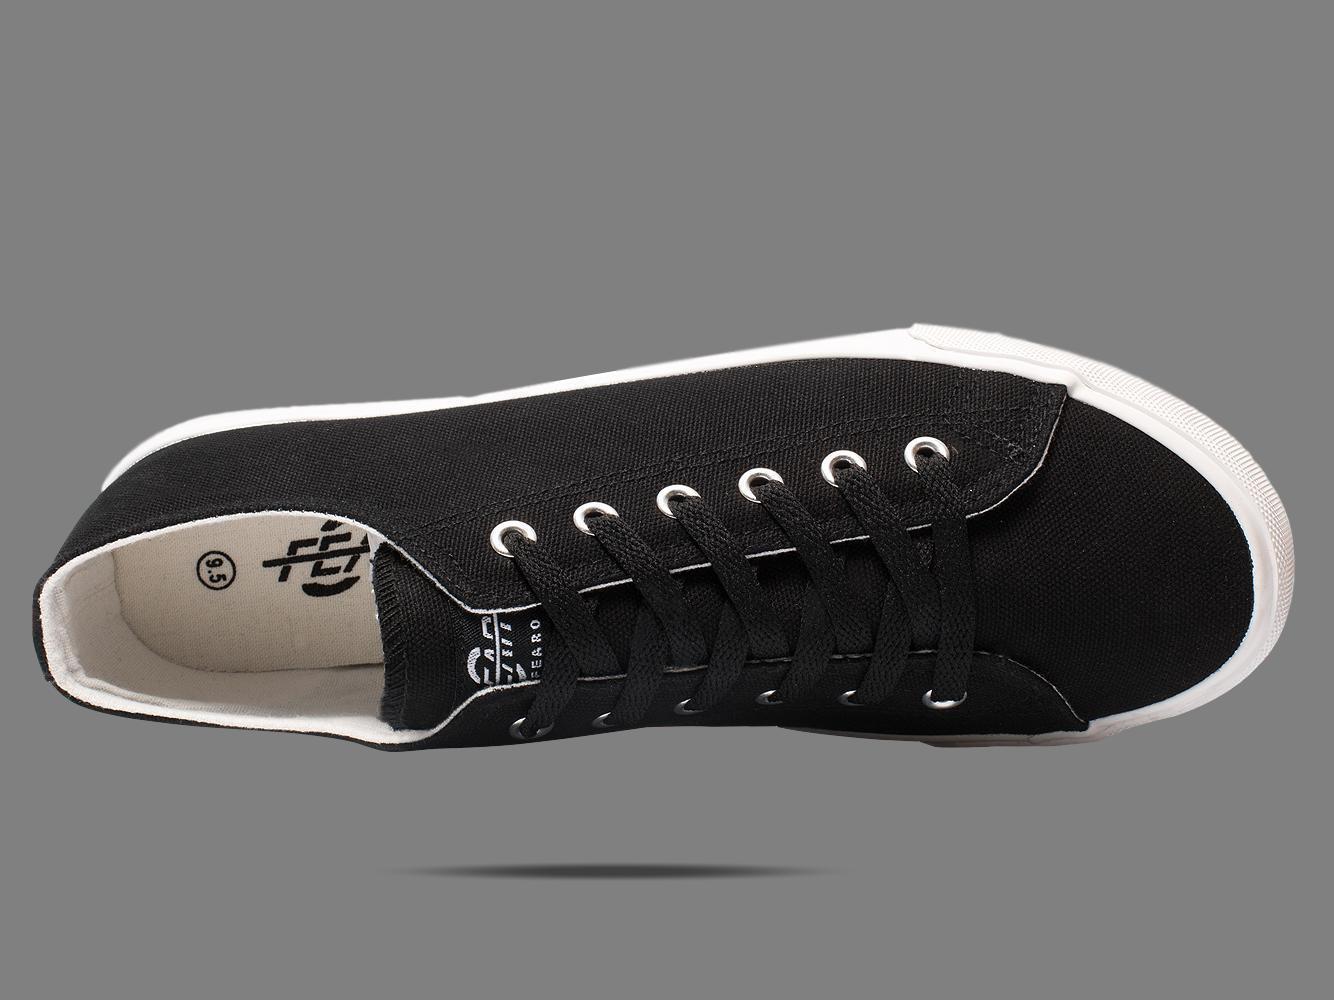 Fear0 NJ Unisex Simple Black/White Canvas Loafer Sneakers - Men - Footwear - Shoes - Sneakers - Benn~Burry